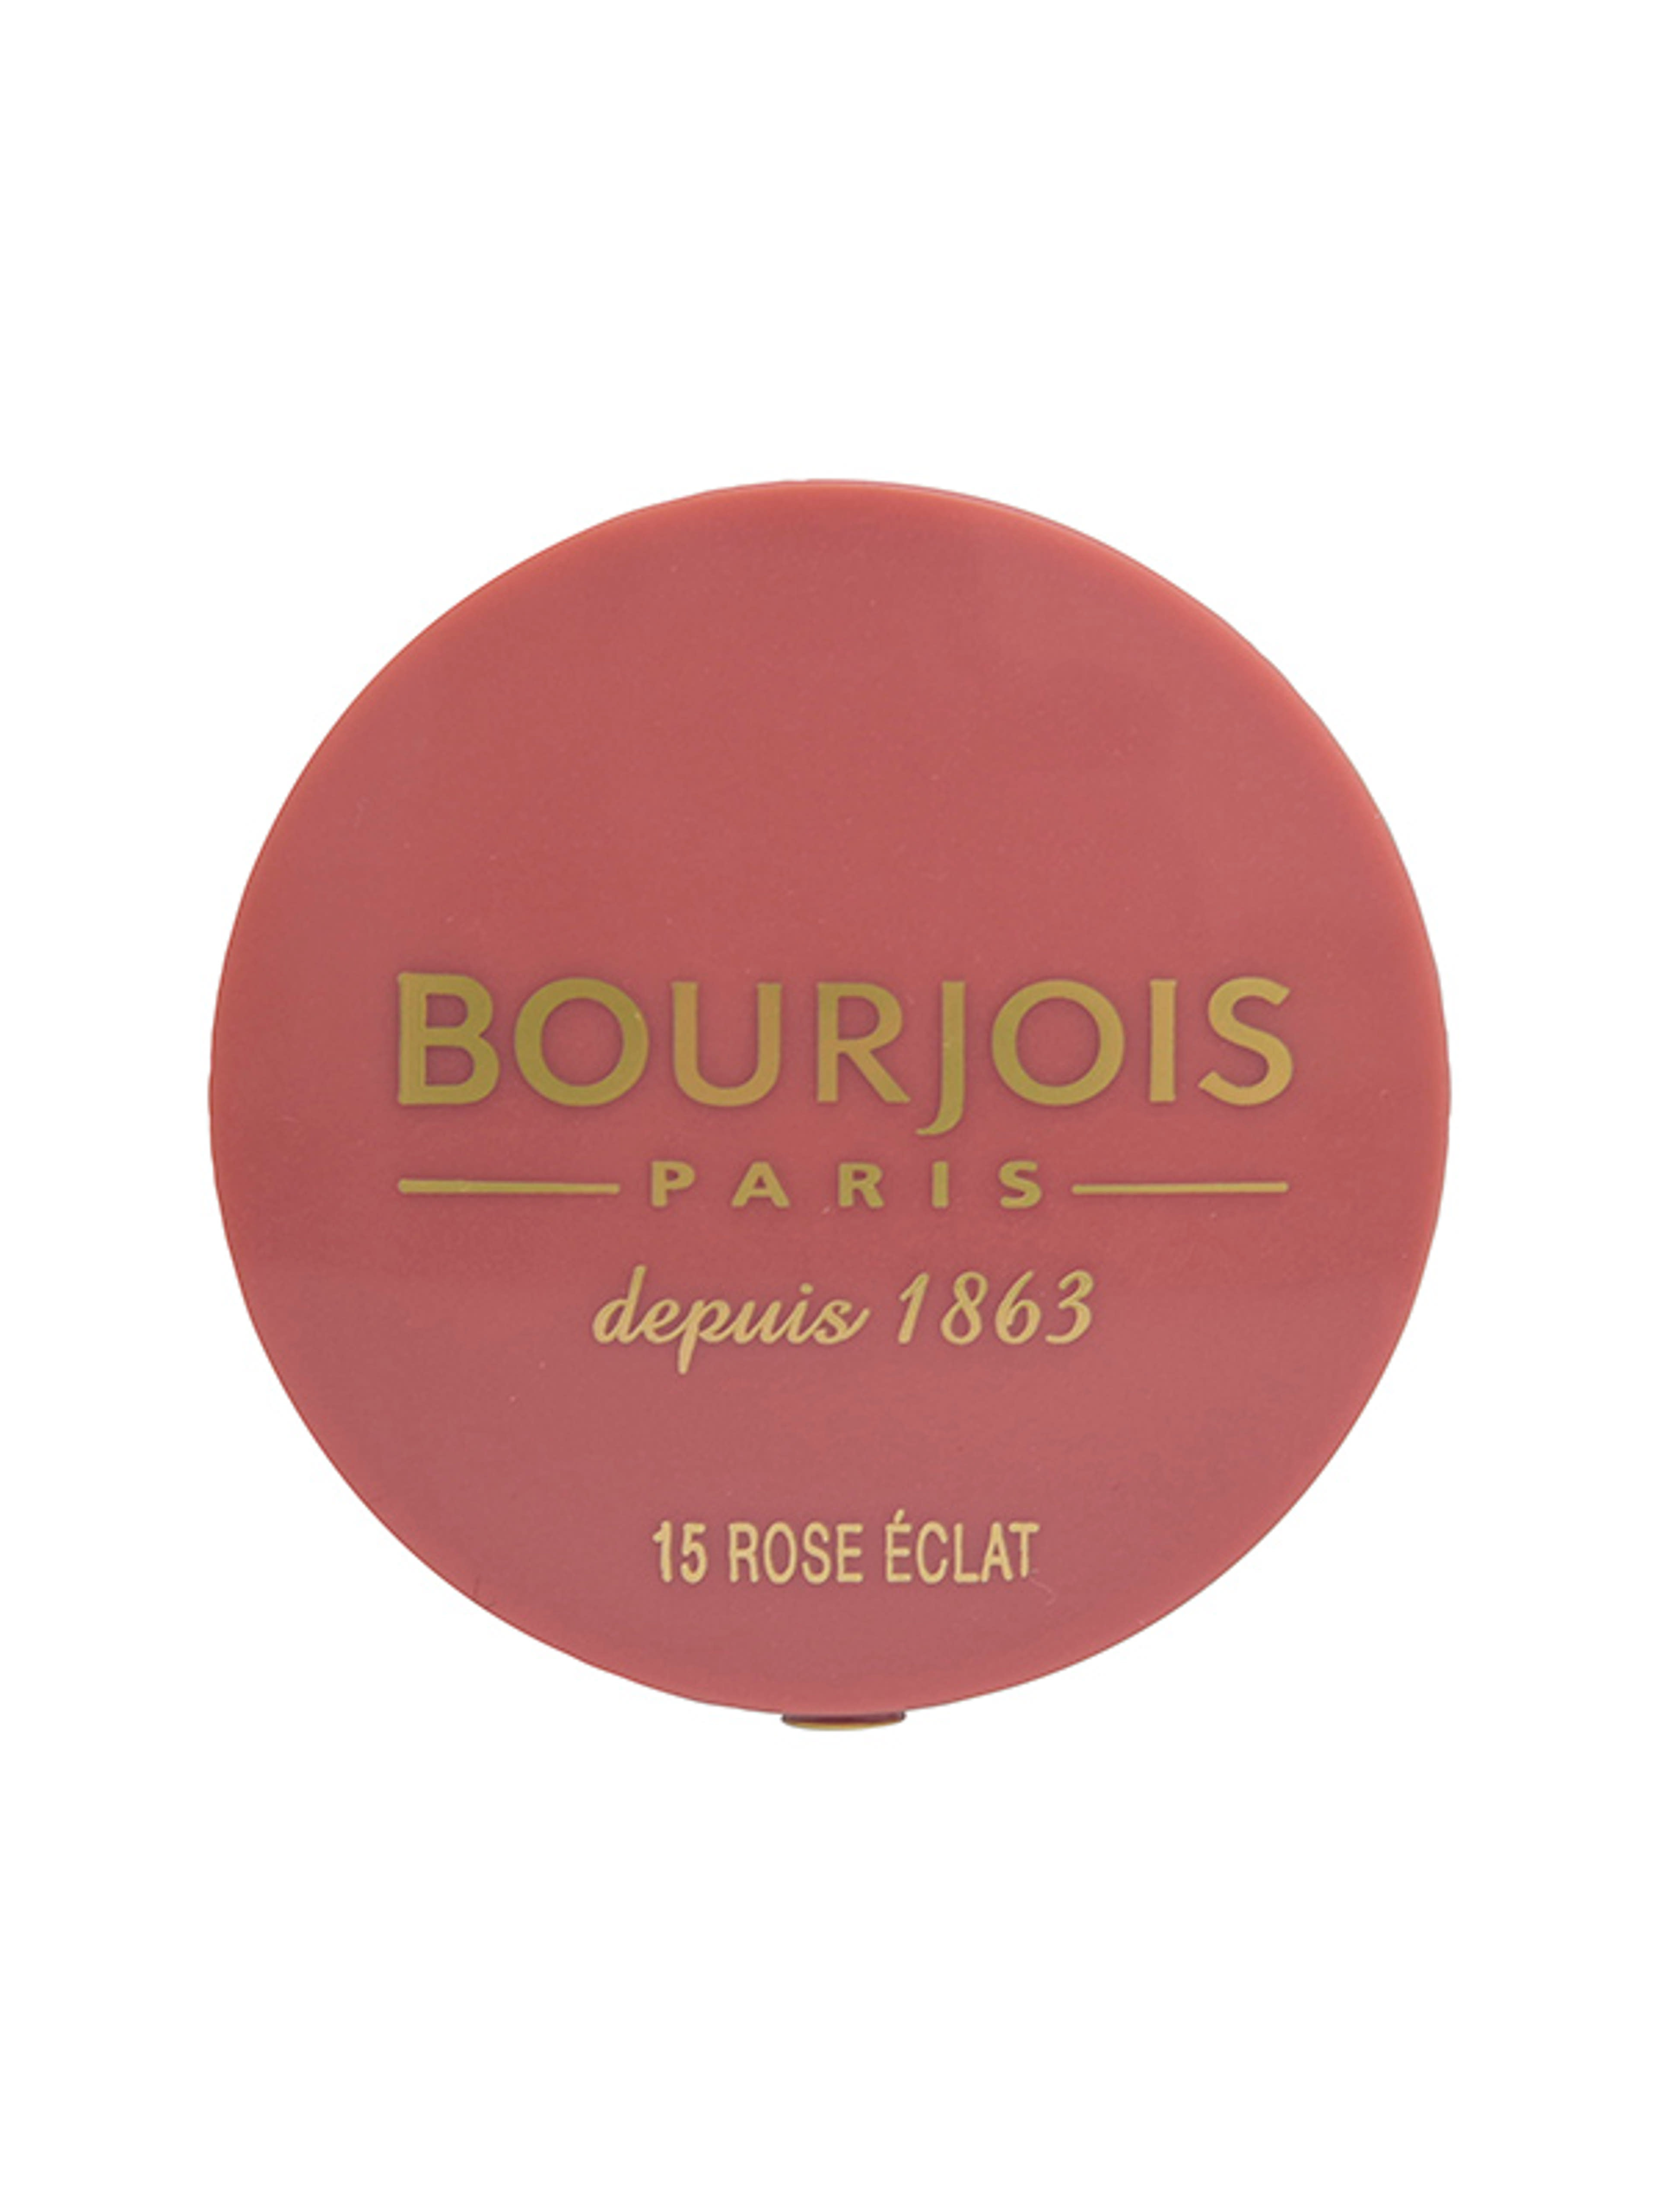 Bourjois pirosító little round pot 015 - 1 db